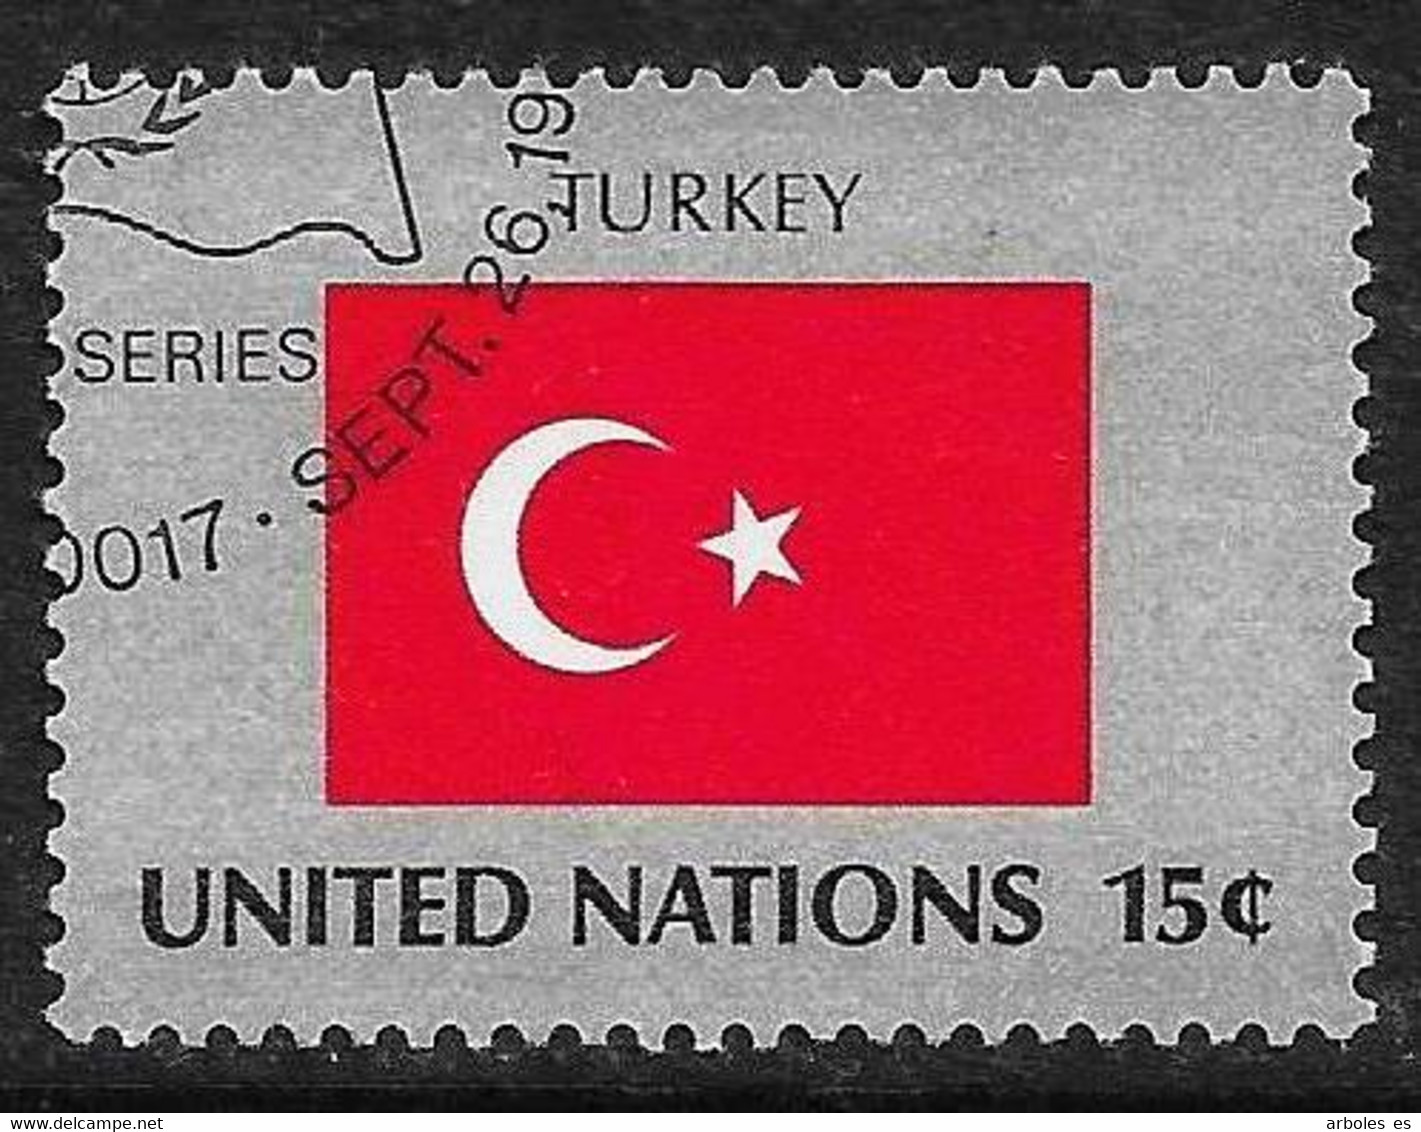 Naciones Unidas - New York - Banderas - Año1980 - Catalogo Yvert N.º 0316 - Usado - - Oblitérés